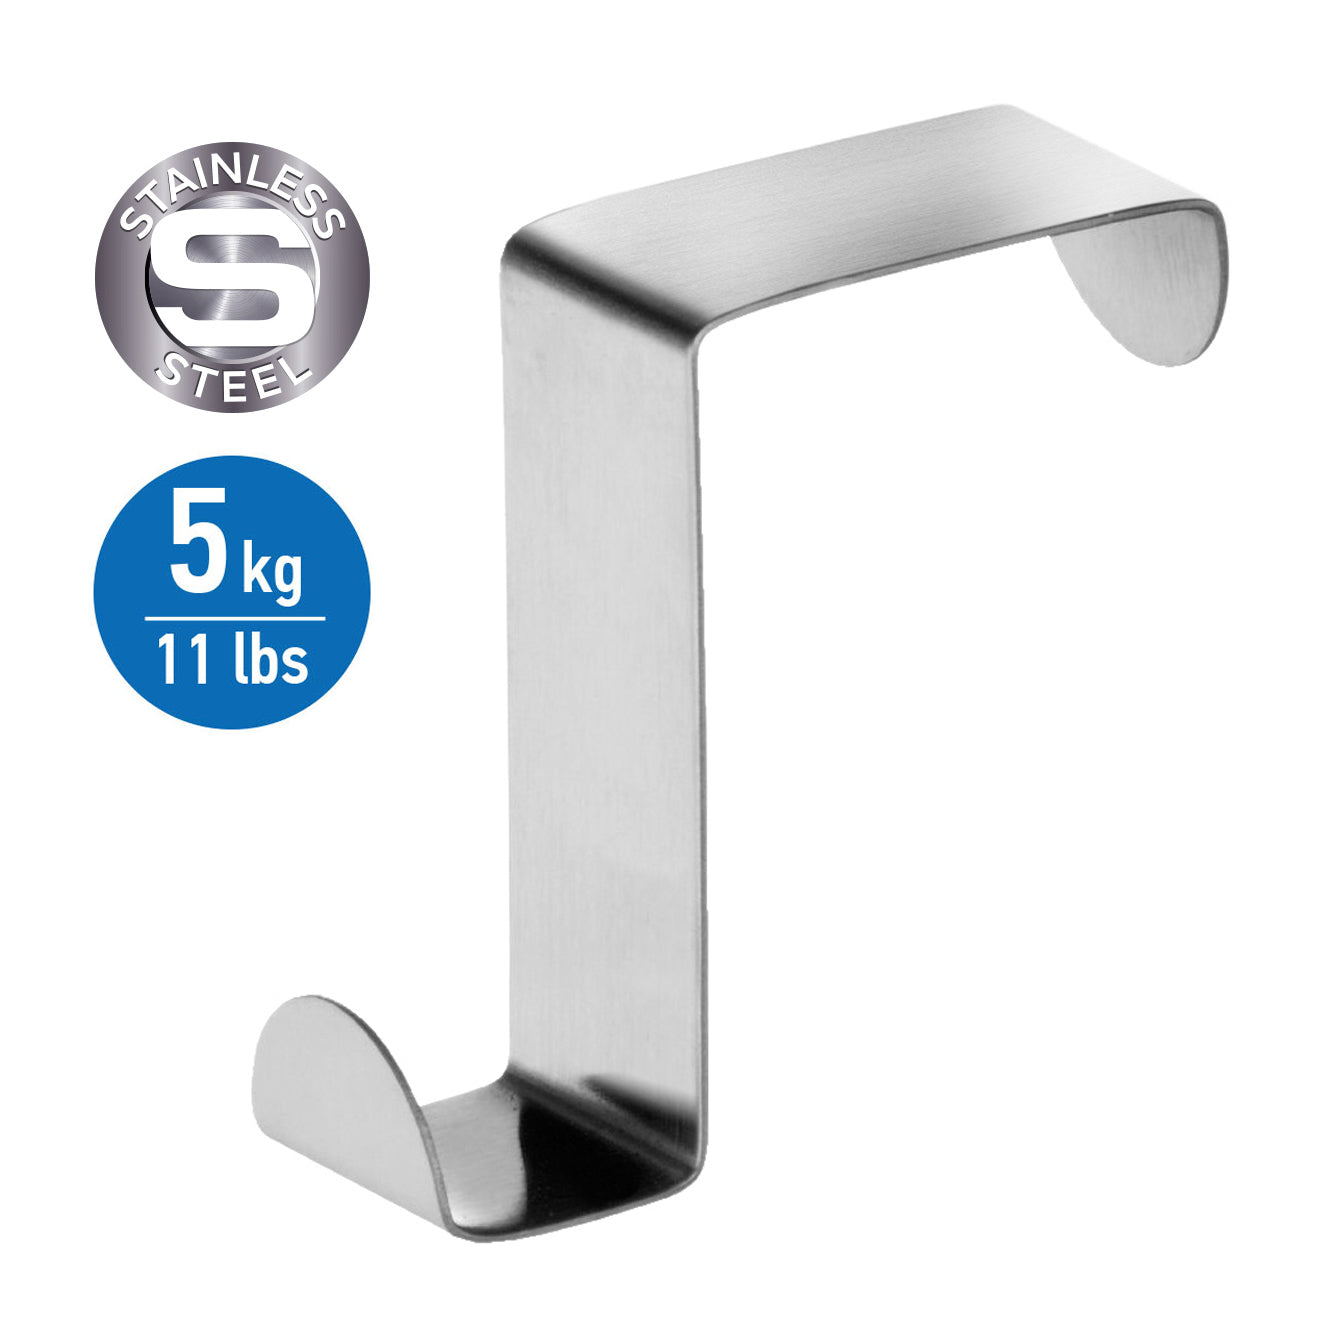 6 Stainless Steel Door Hooks,Reversible for Standard Door and Wardrobe, Tatkraft Seger, 1